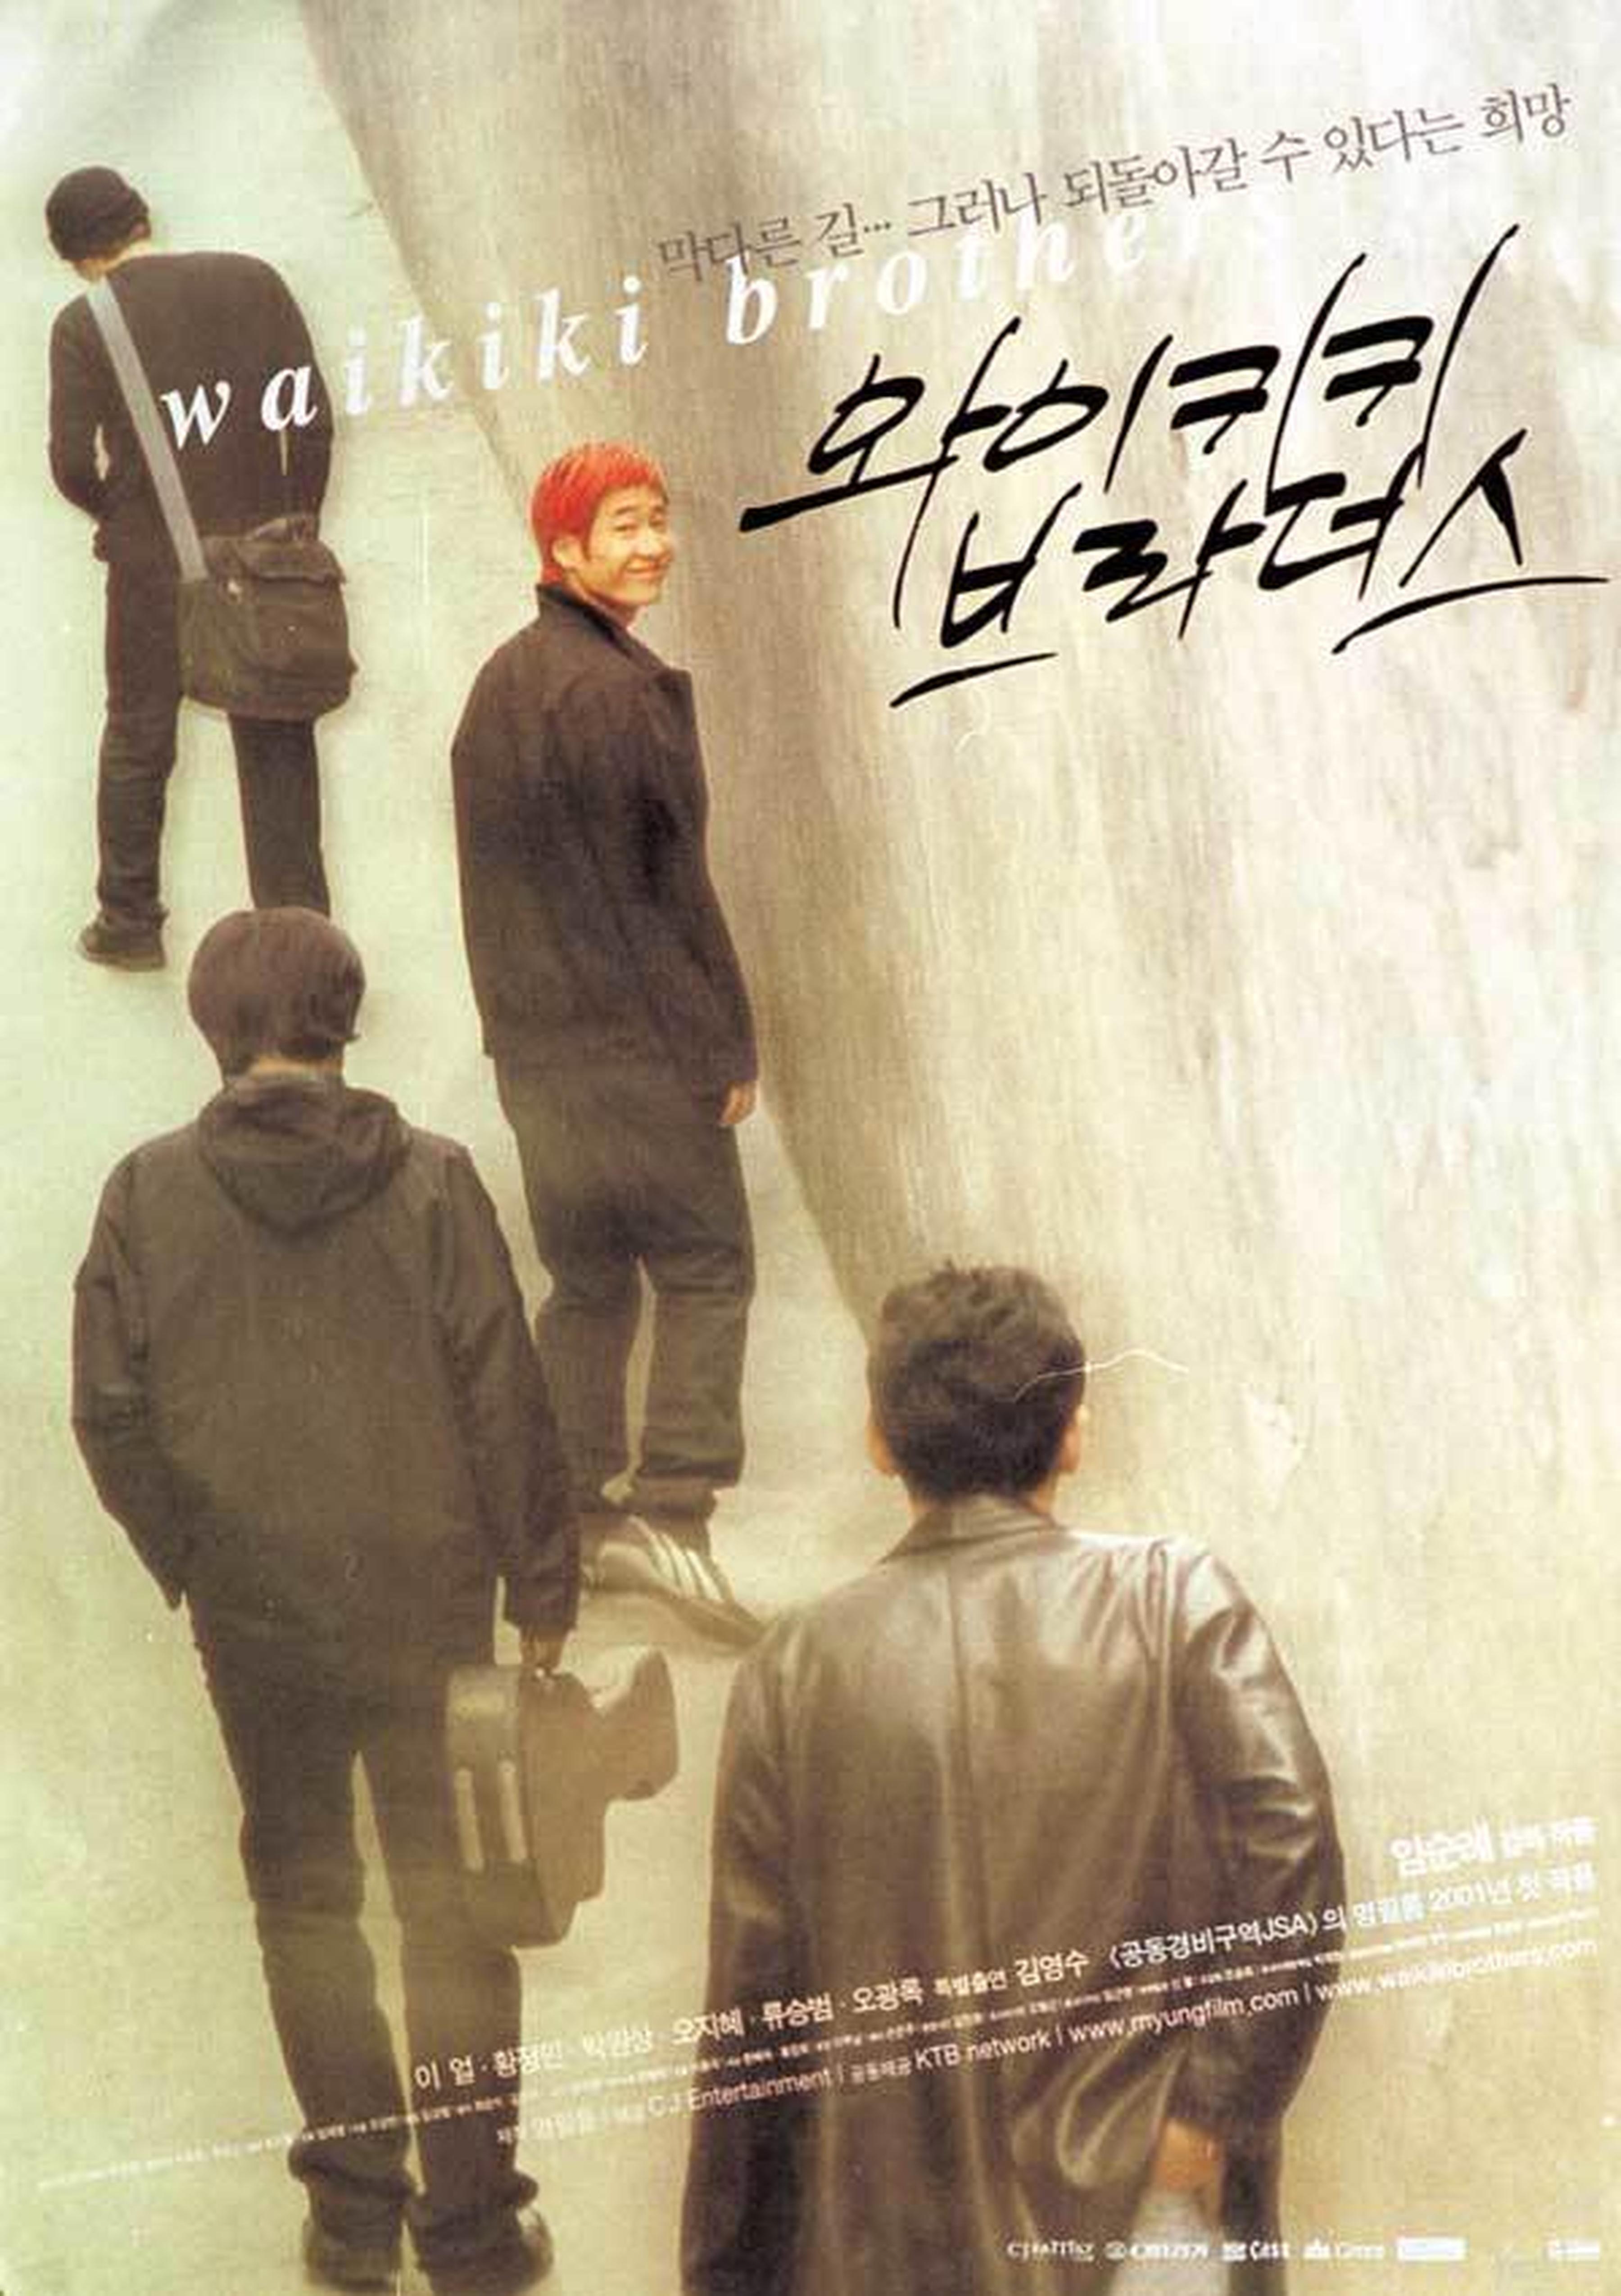 【2000-2010】《威基基兄弟》 (2001)导演林顺礼